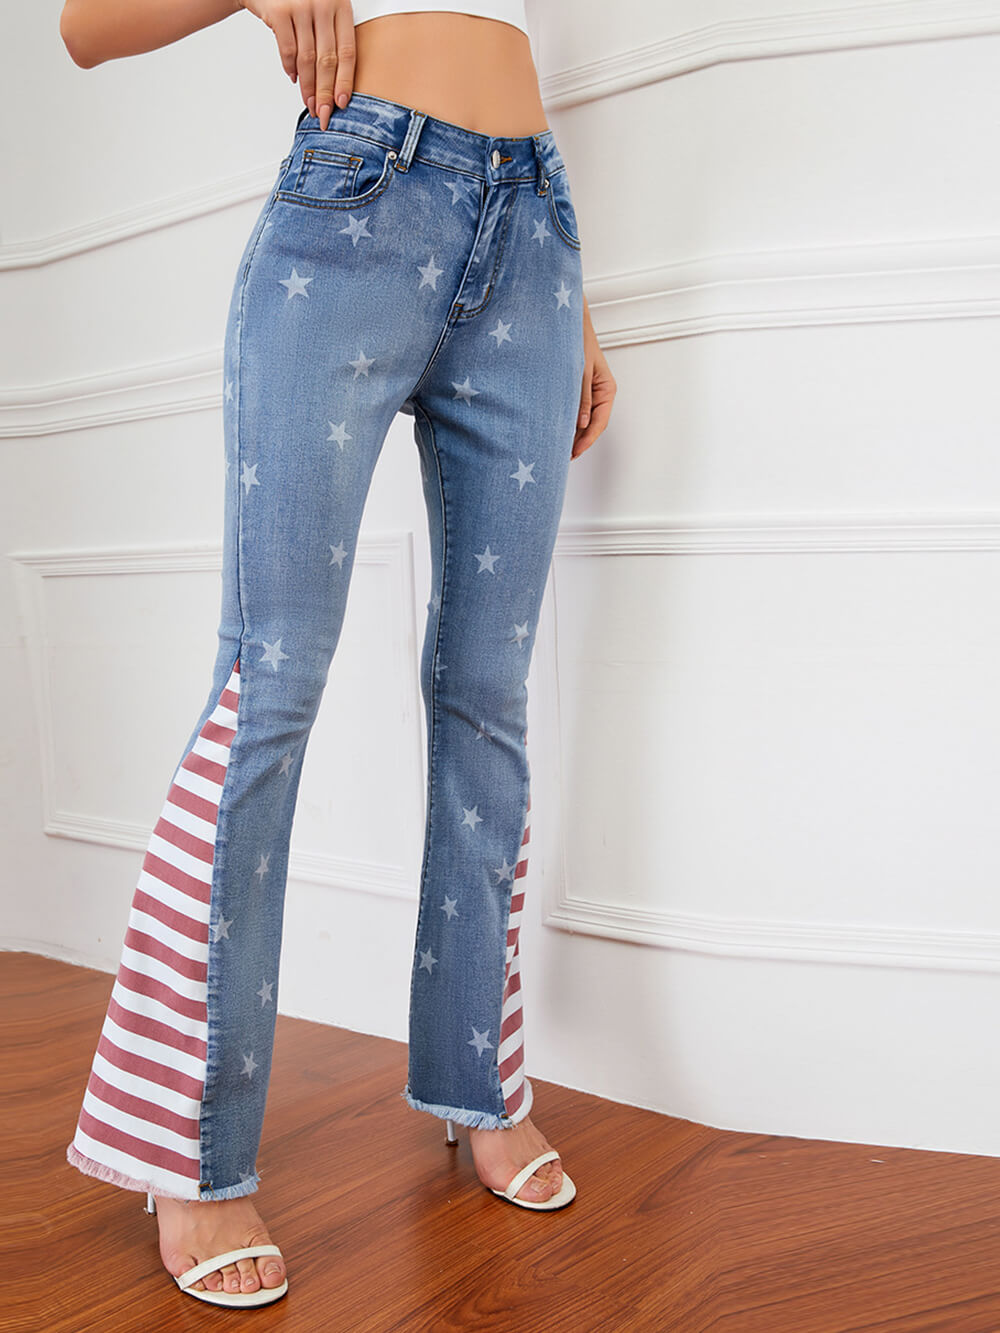 Jeans com listras colorblock estampadas com estrelas